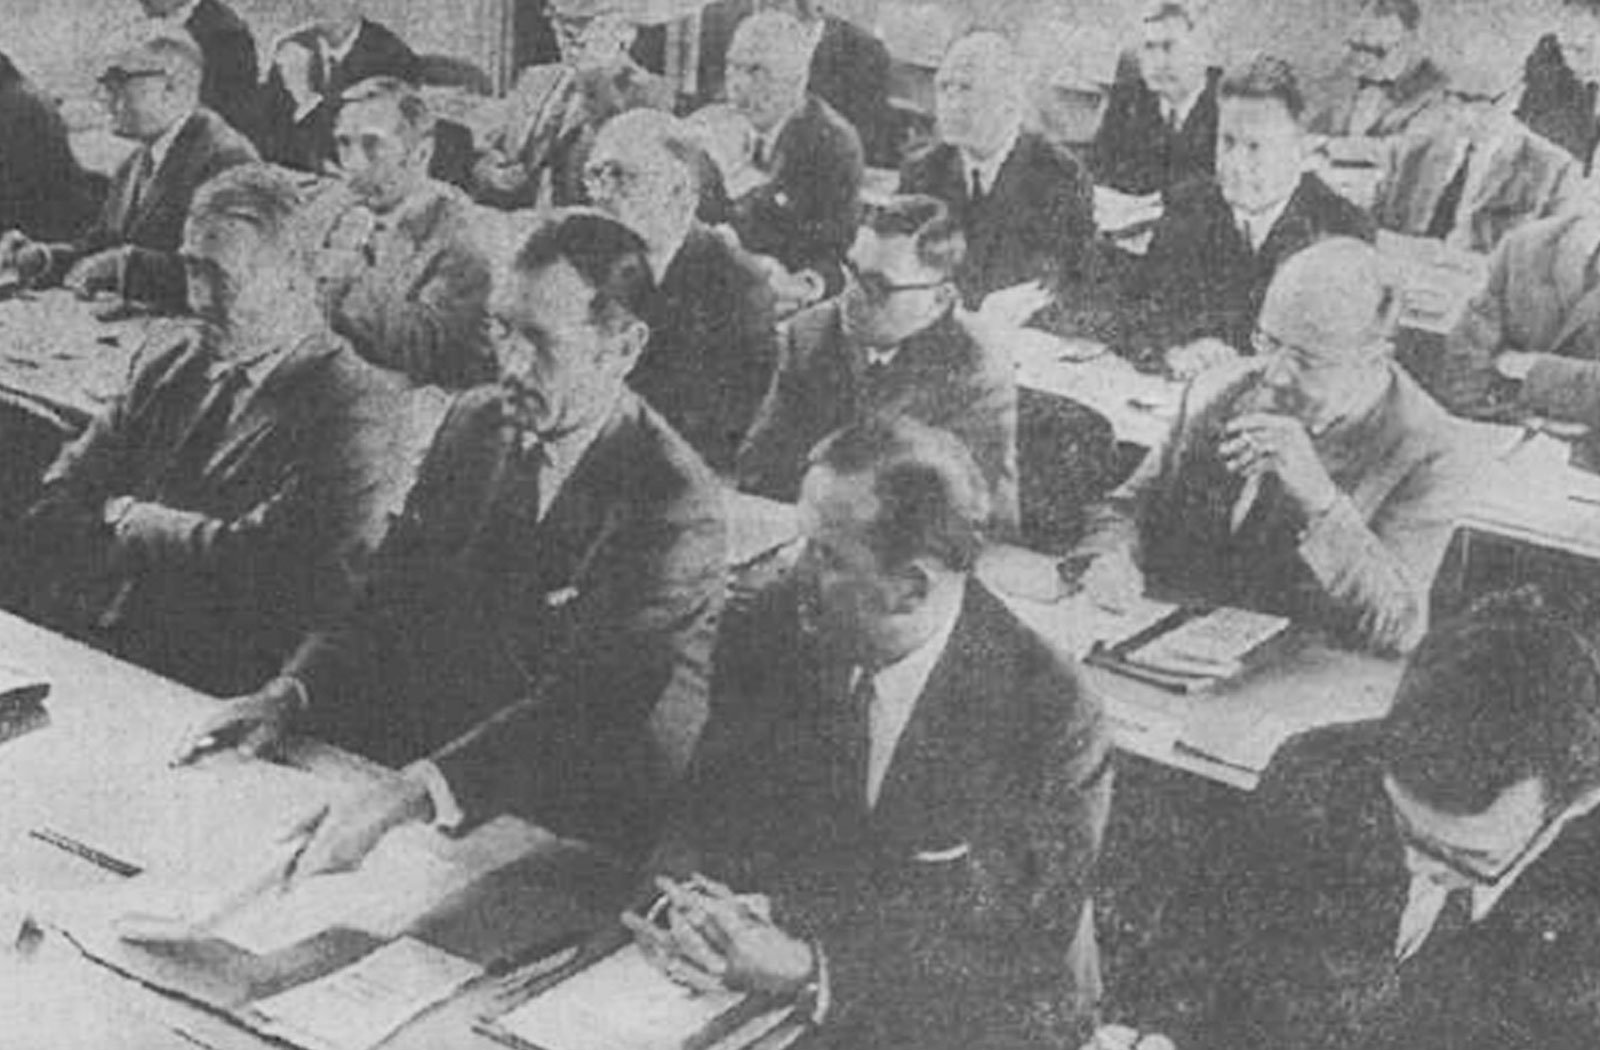 Una ventina di uomini in giacca e cravatta ascoltano seduti una conferenza e prendono appunti.